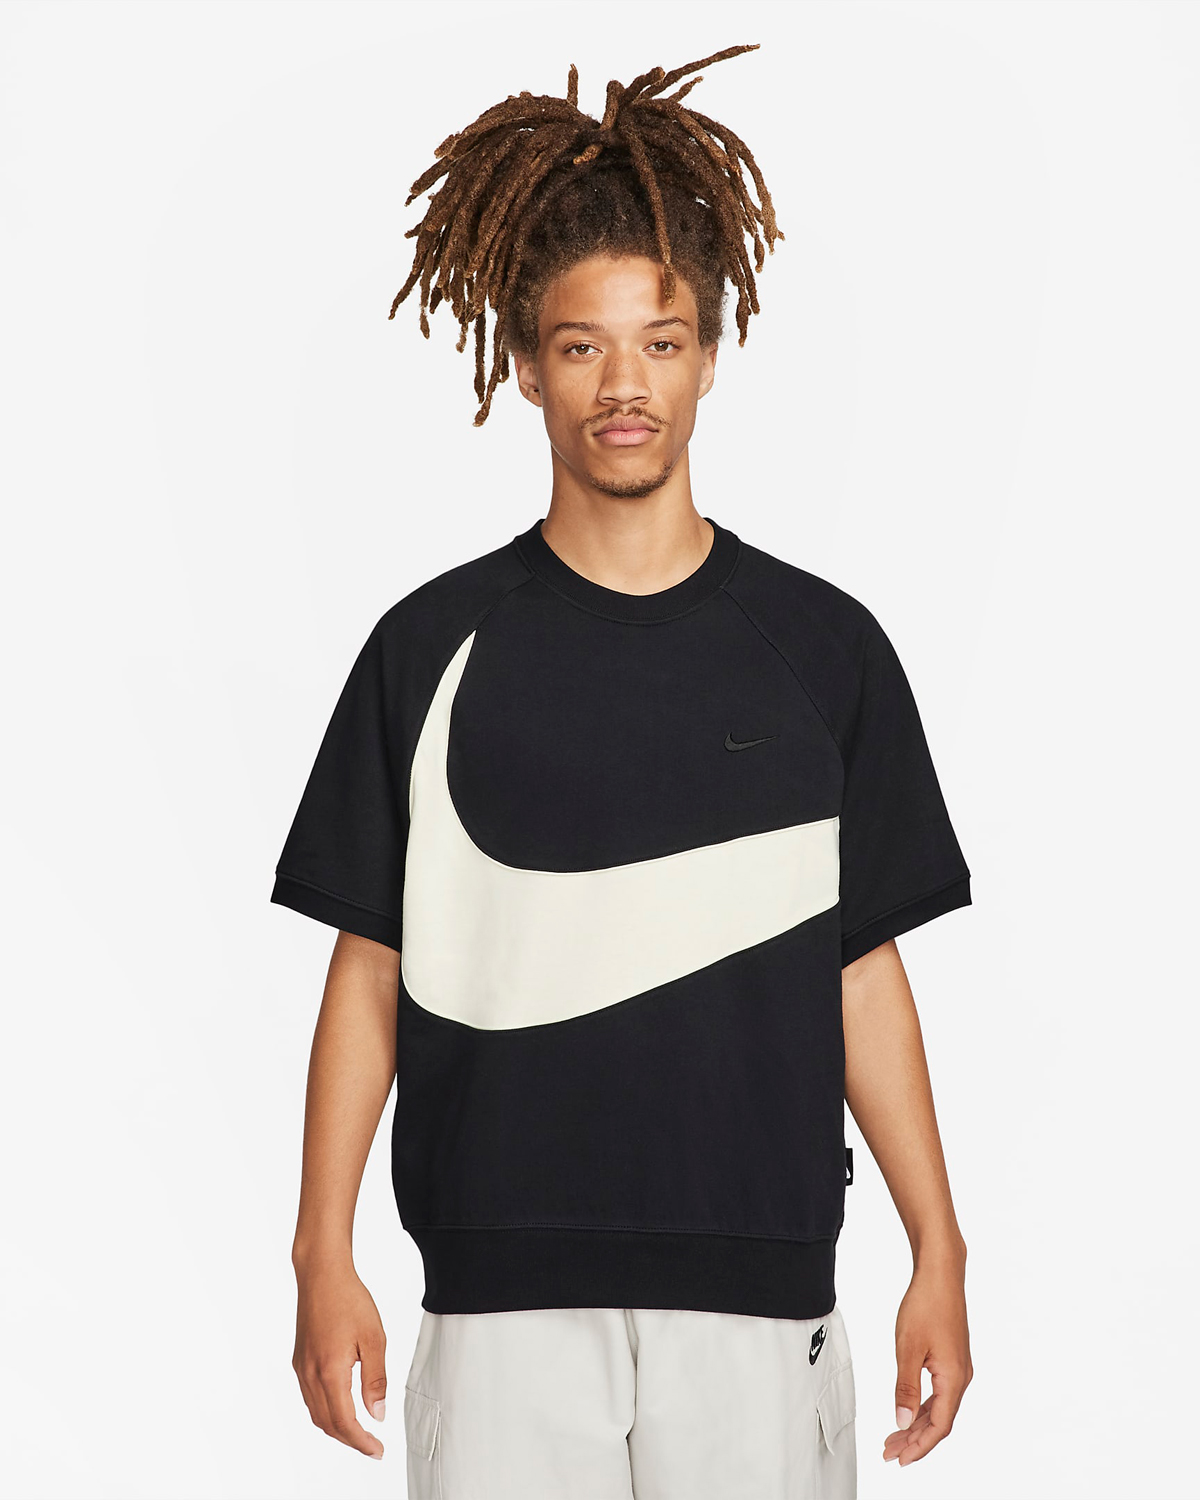 Nike-Sportswear-Swoosh-Short-Sleeve-Top-Black-Coconut-Milk-1